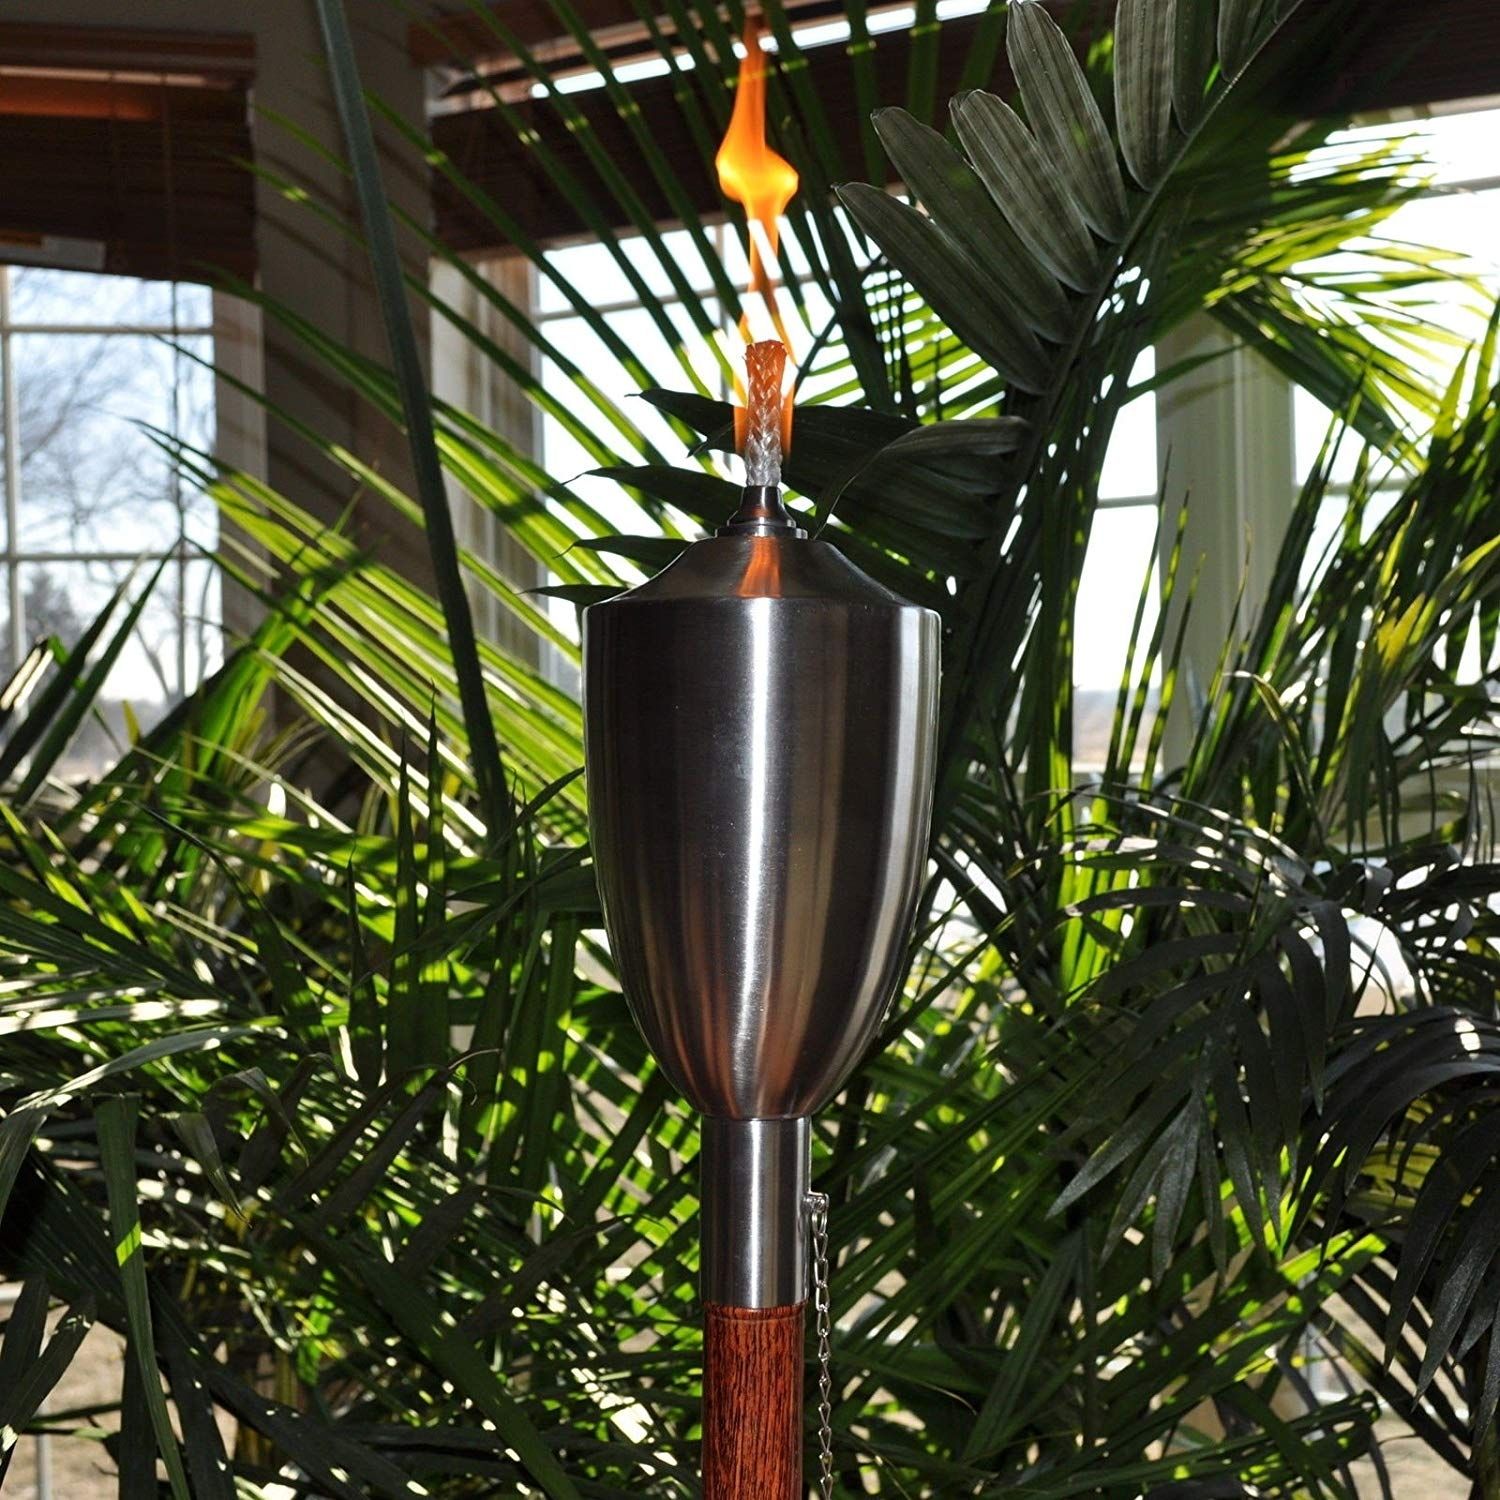 Eric X Light 12 Pcs Long Life Fiberglass Replacement Tiki Torch Wick With Regard To Outdoor Tiki Lanterns (Photo 18 of 20)